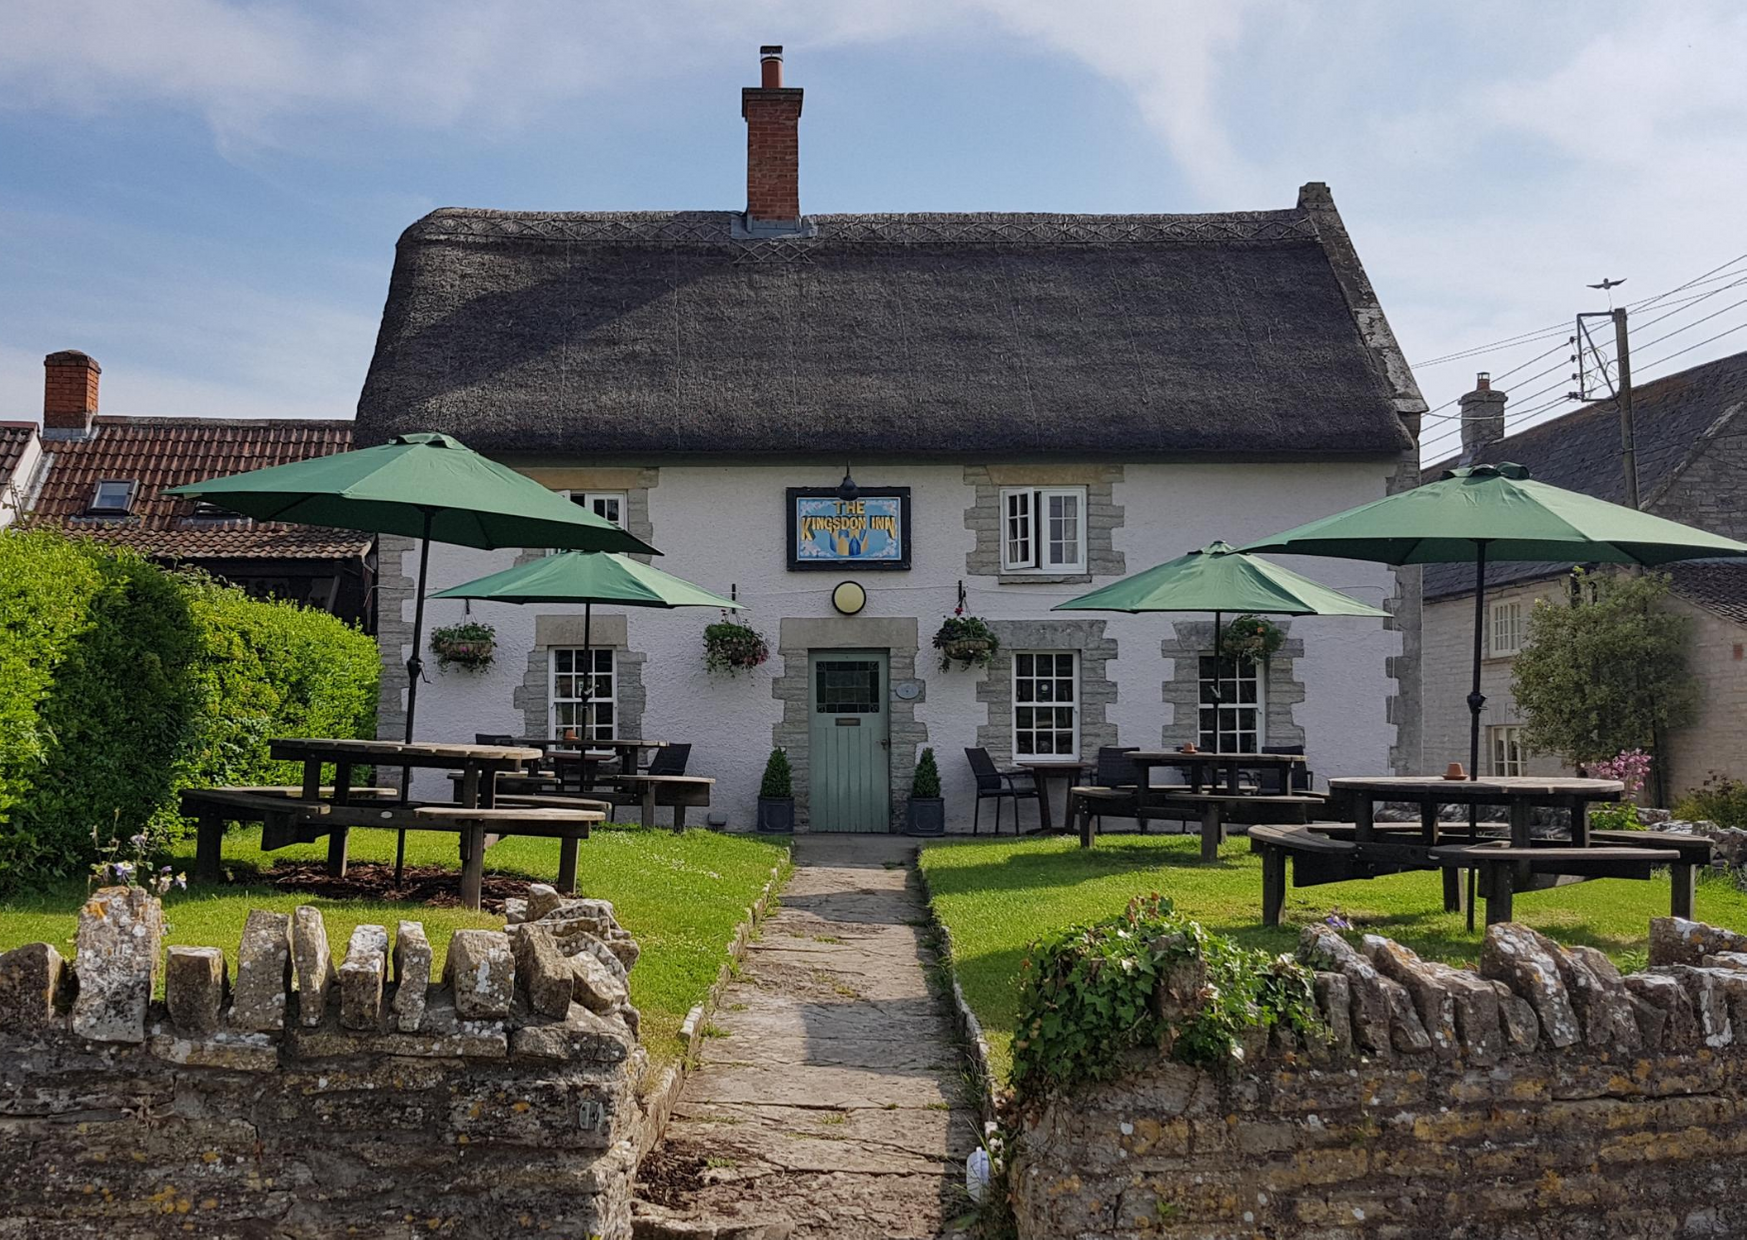 The Kingsdon Inn - Dorset